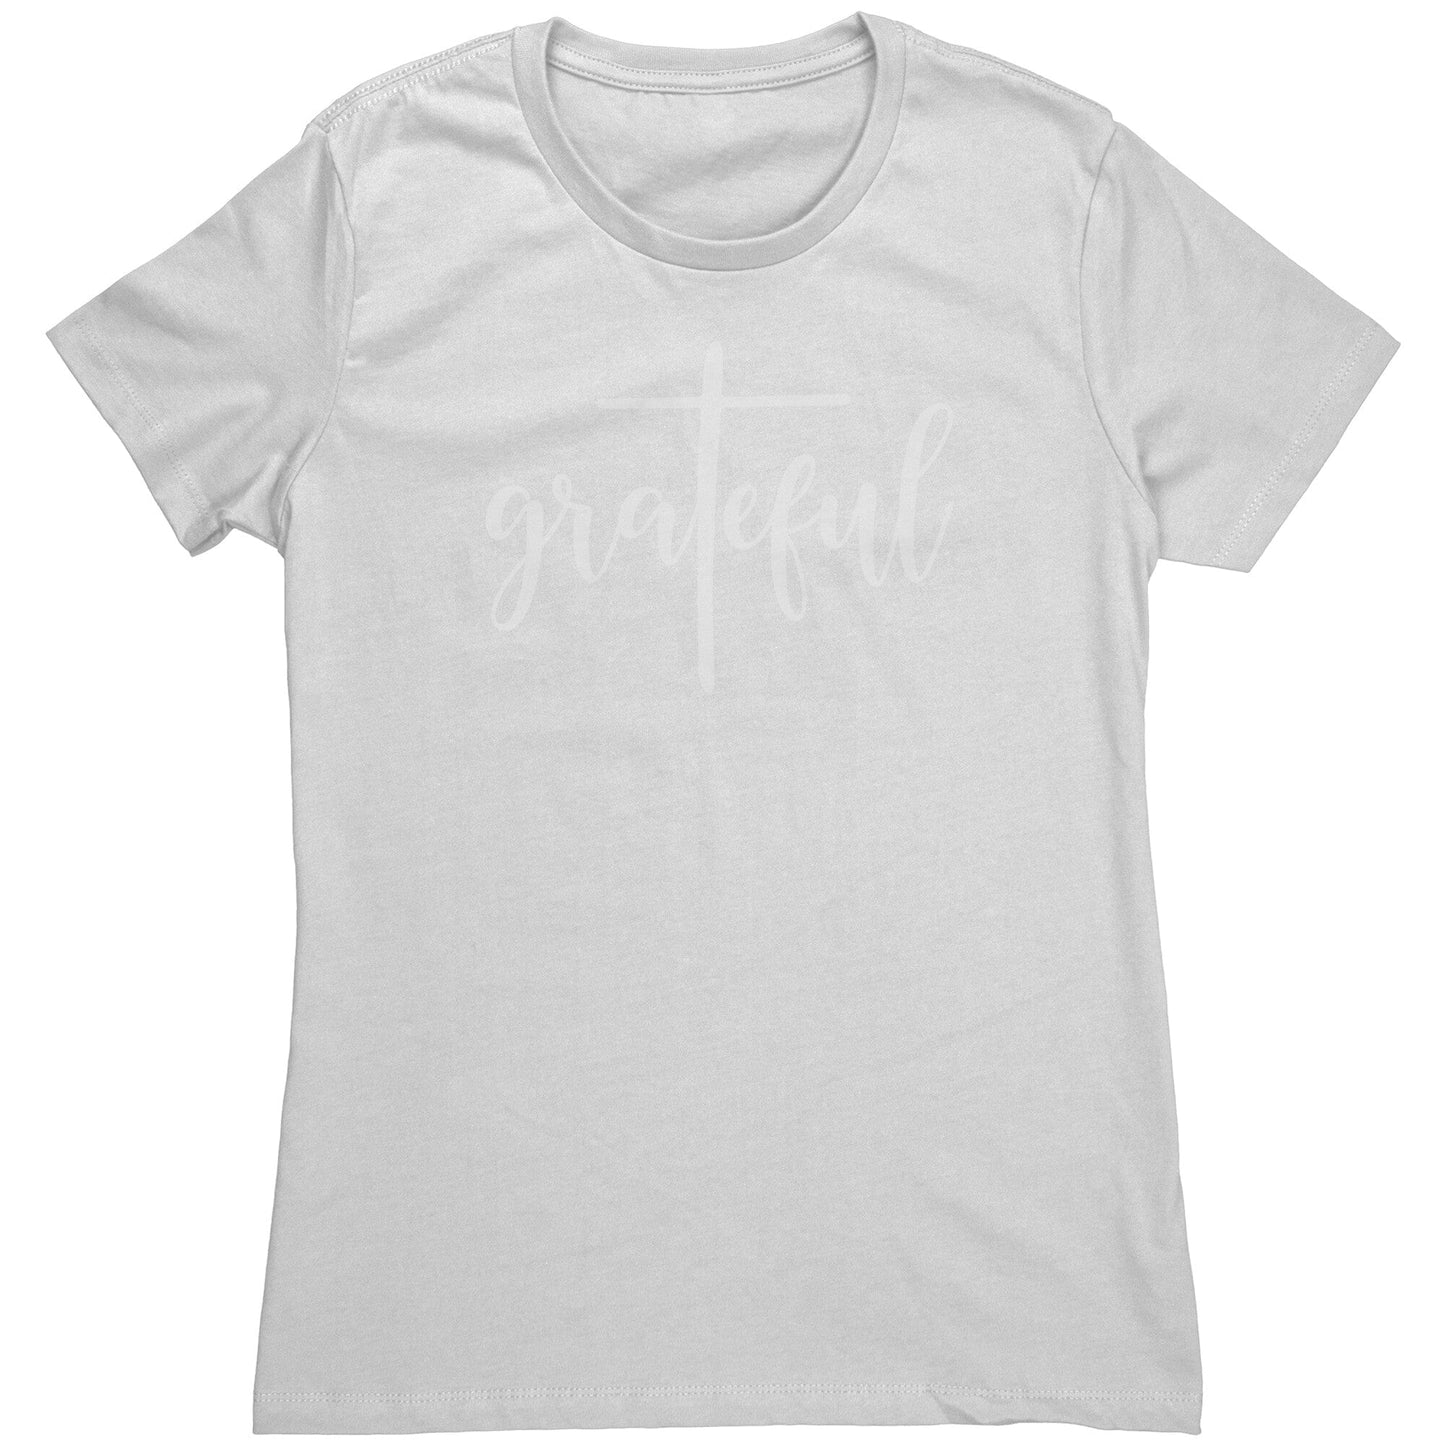 Grateful Women's T-Shirt